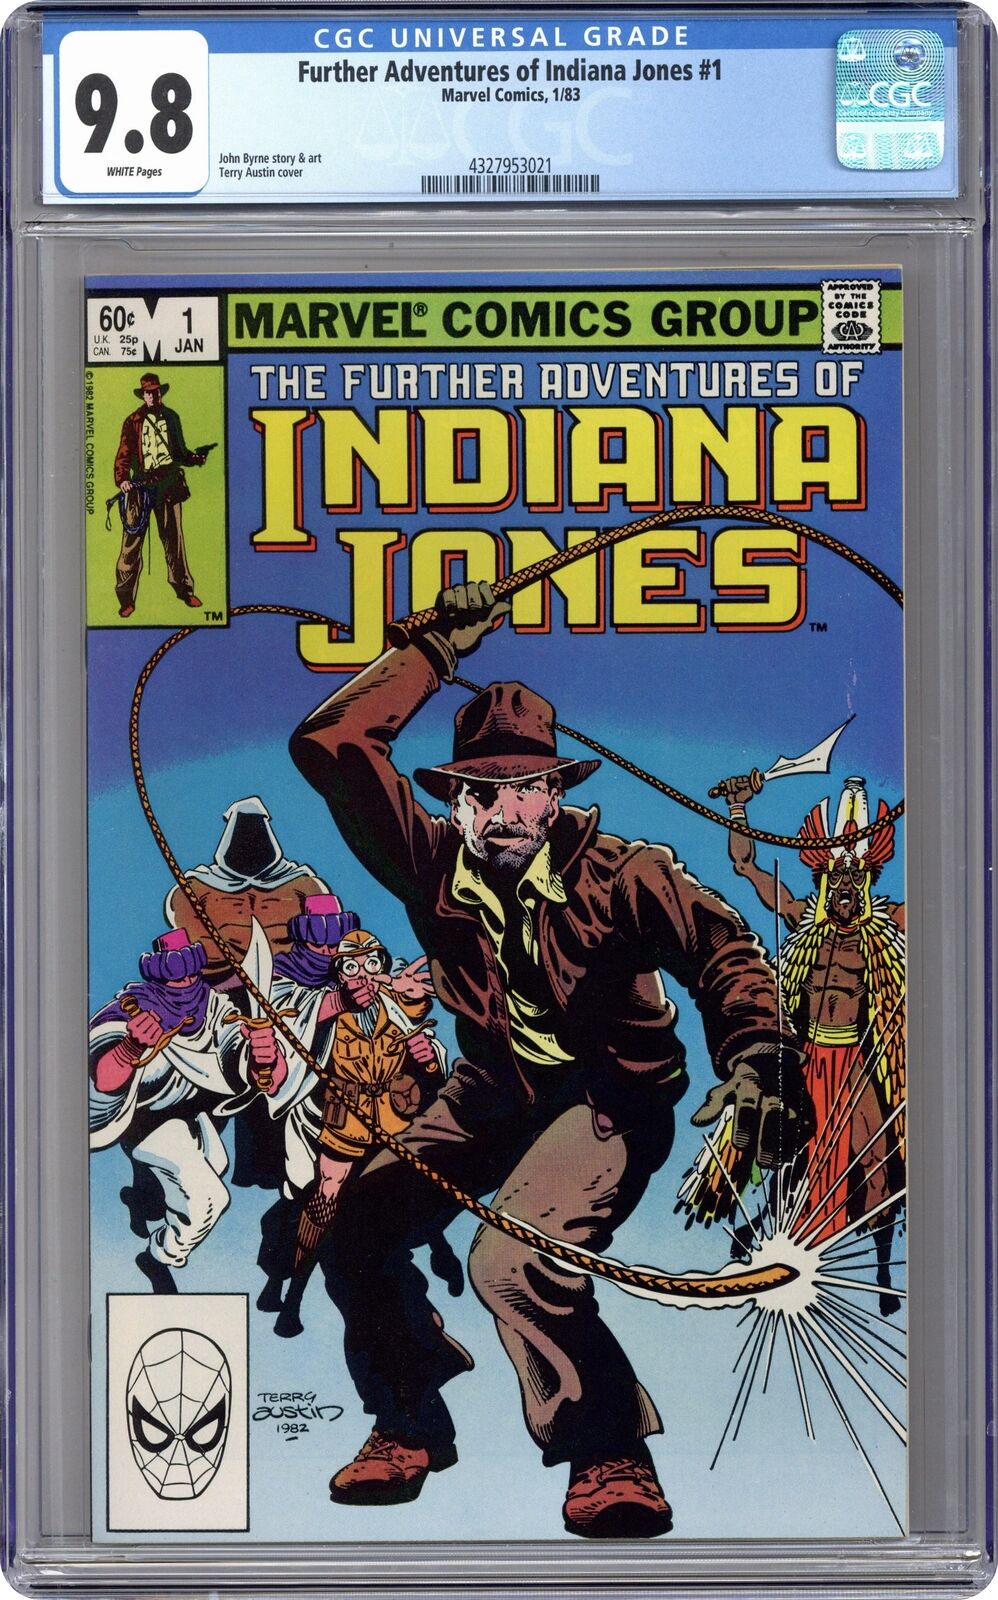 Further Adventures of Indiana Jones #1 CGC 9.8 1983 4327953021